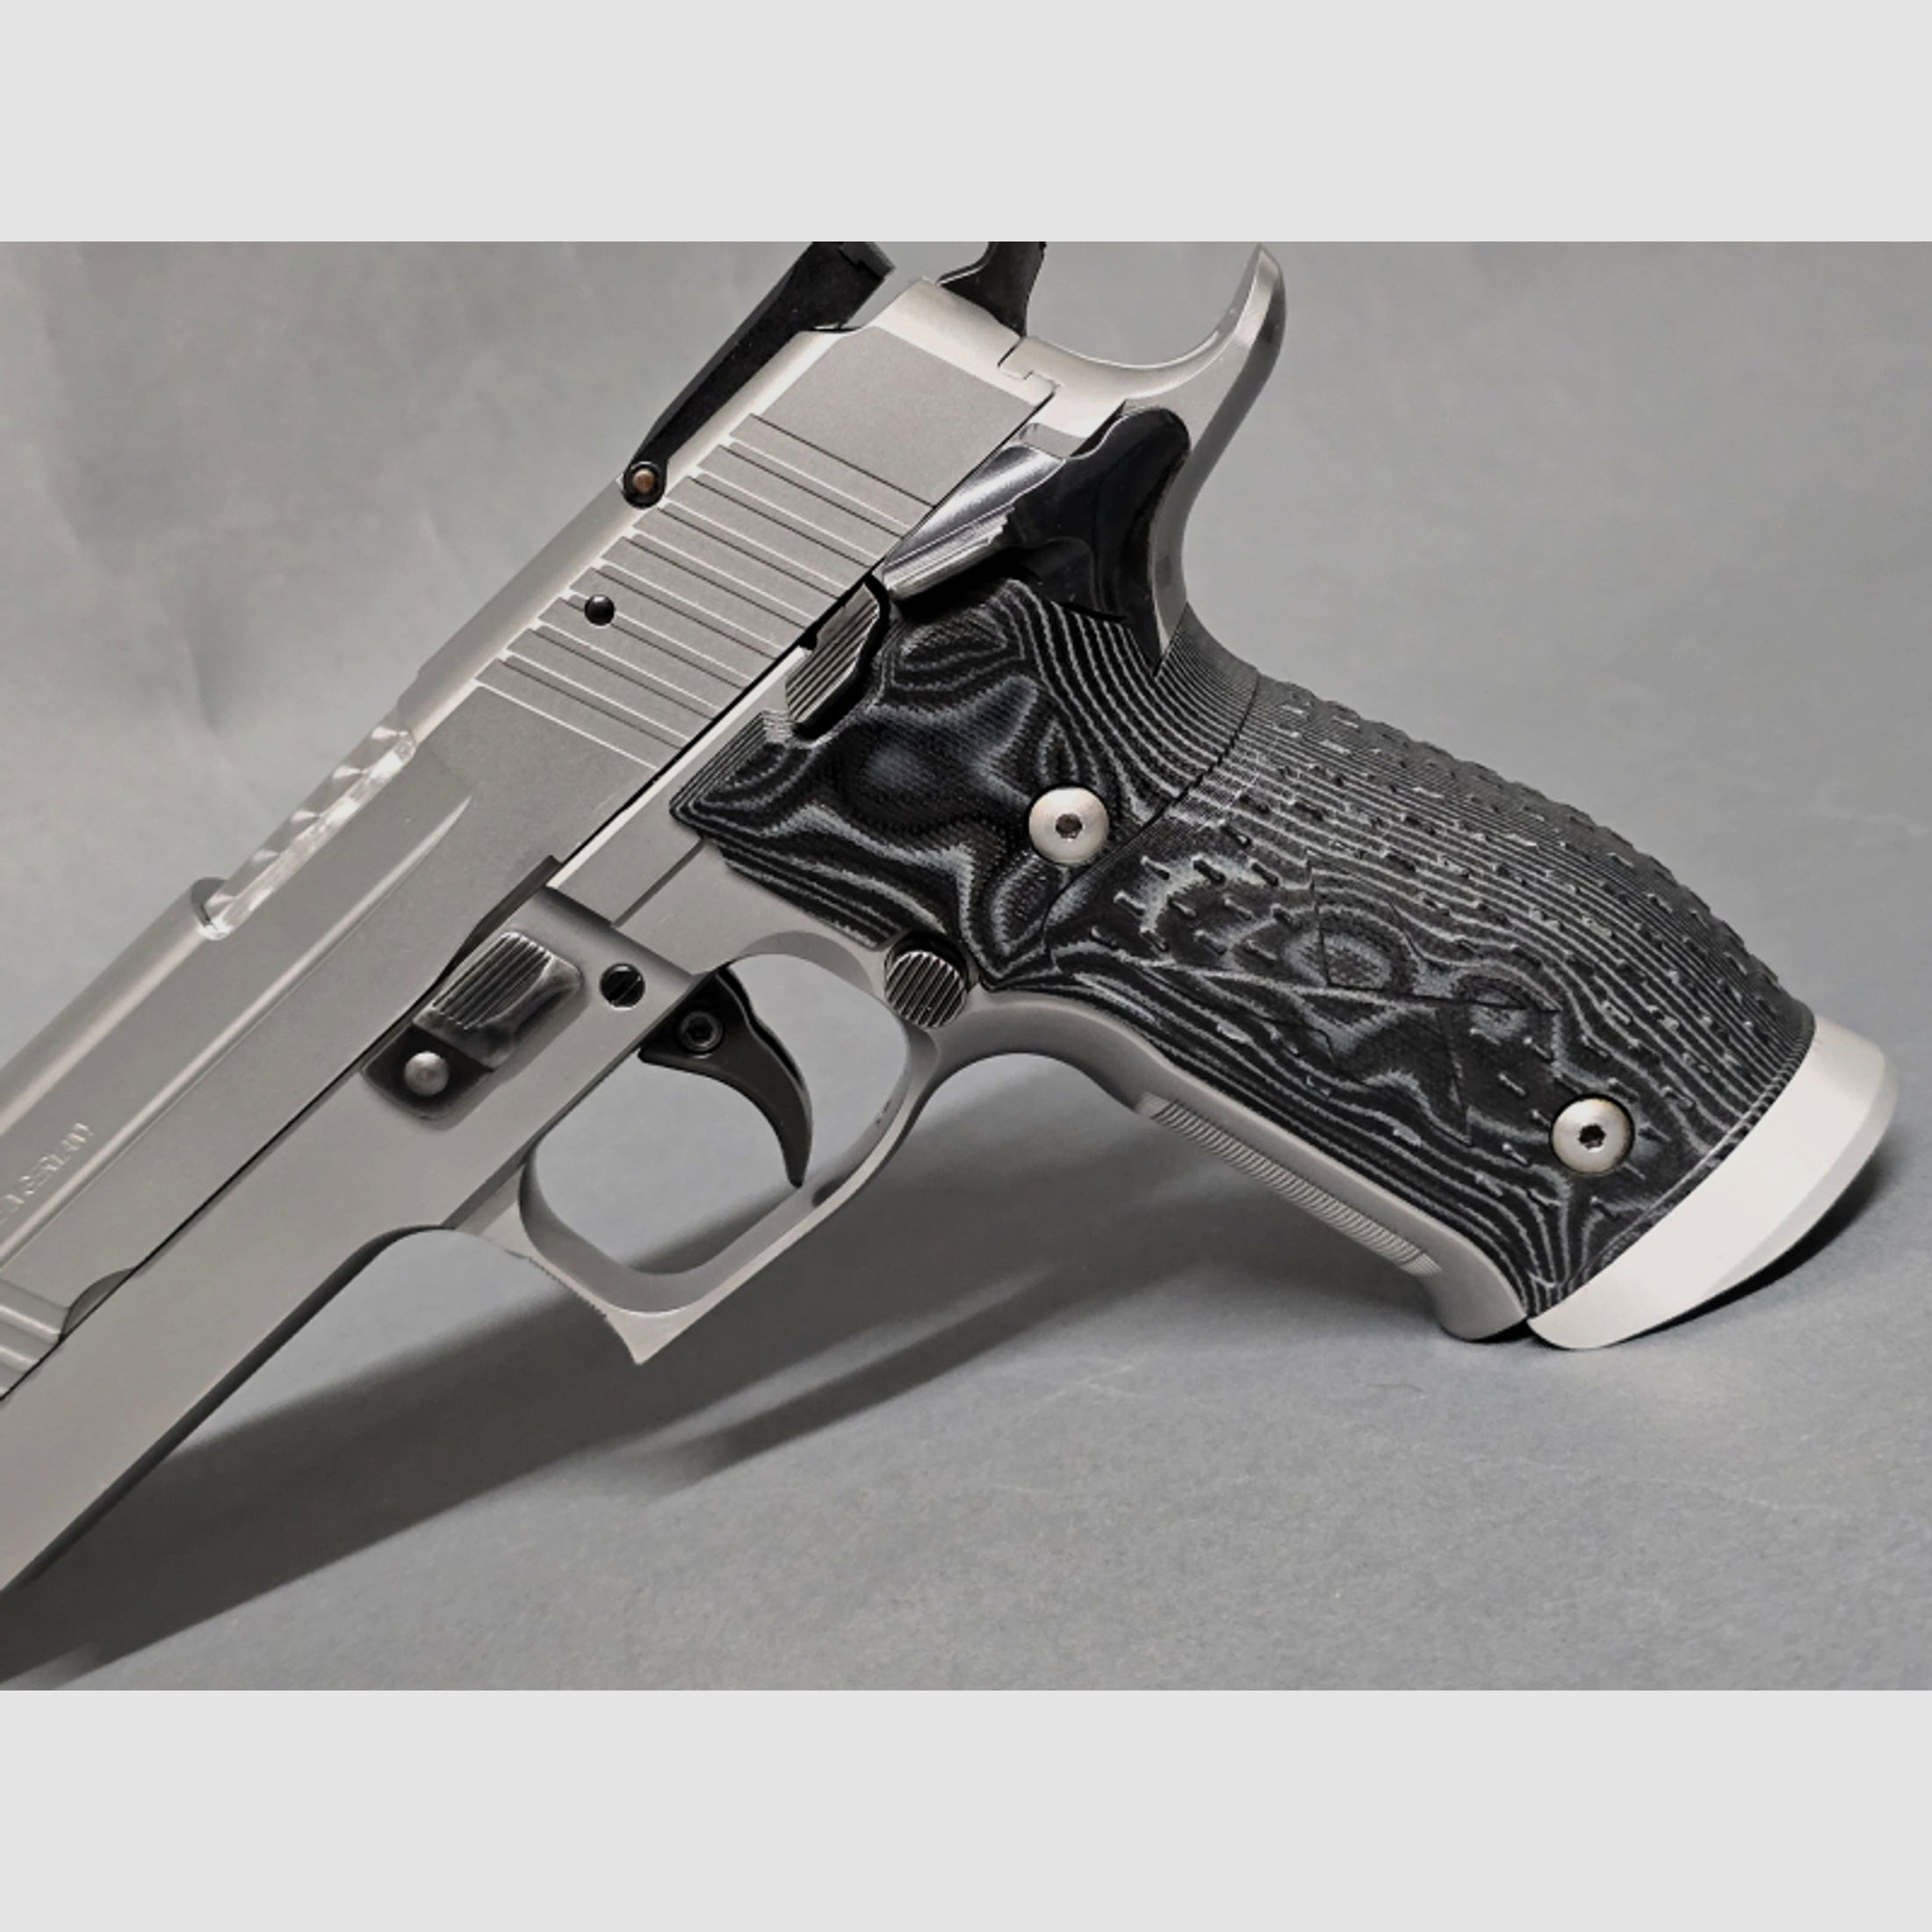 SIG SAUER P226 X-SIX 9mm Luger